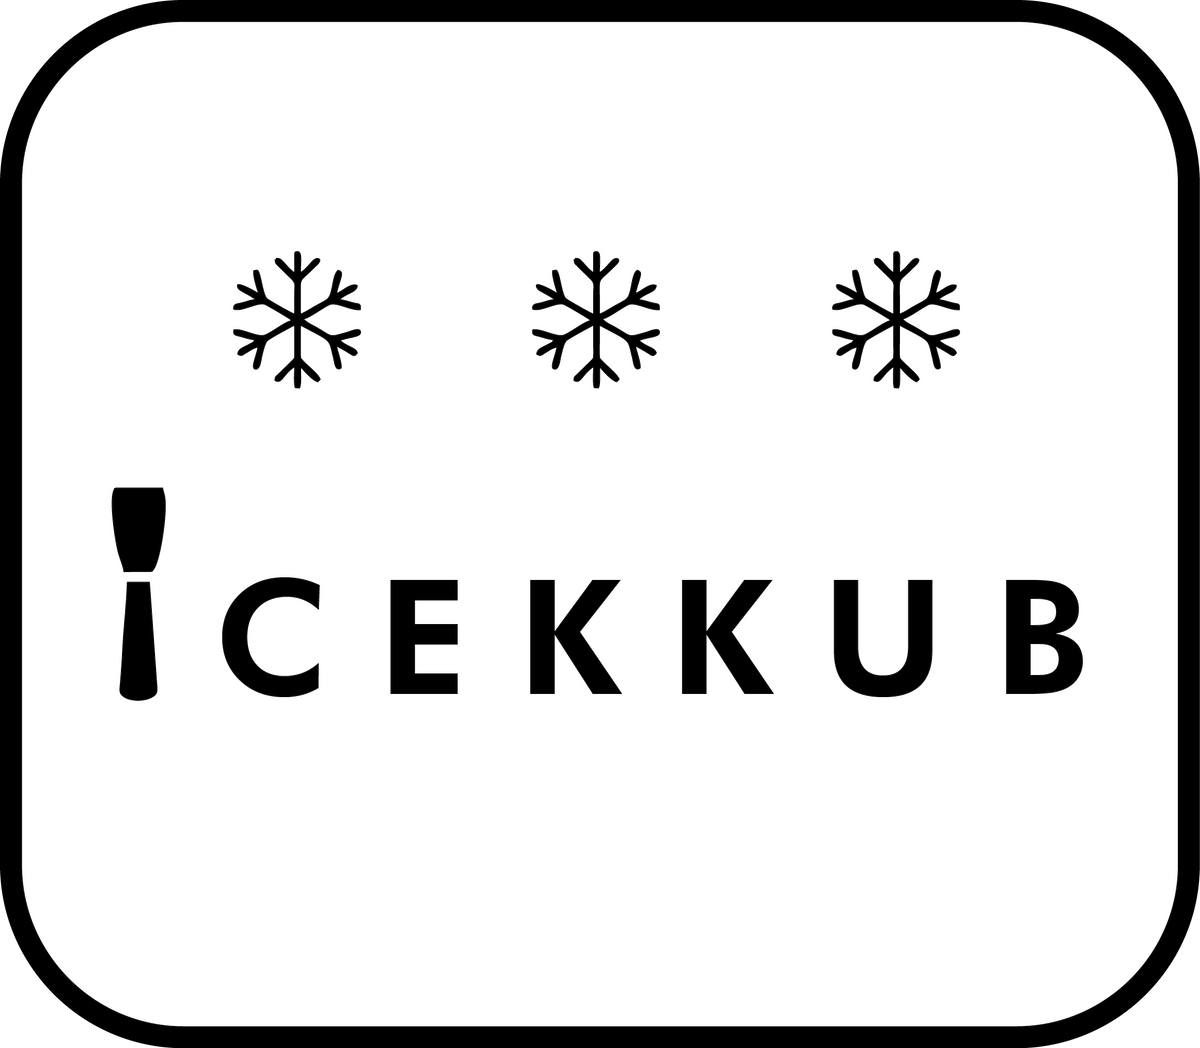 ICEKKUB